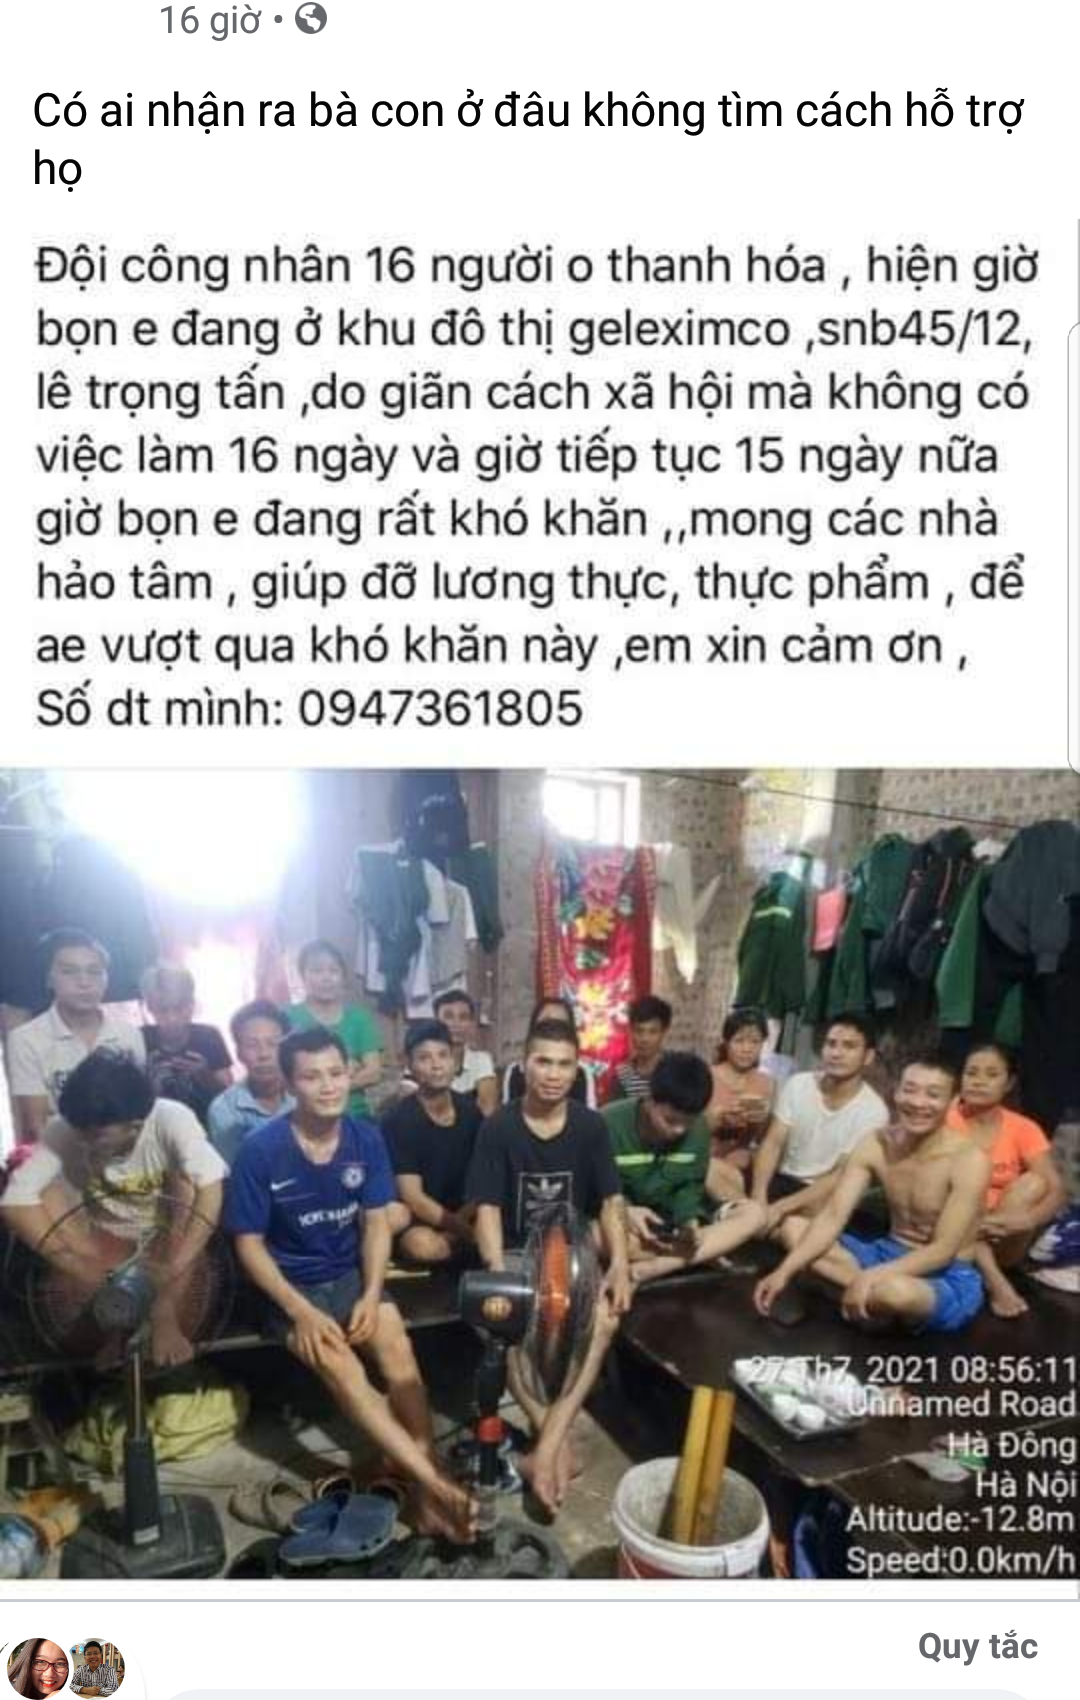 Nhóm lao động Thanh Hoá: Chúng tôi đã được hỗ trợ đủ, xin nhường ...